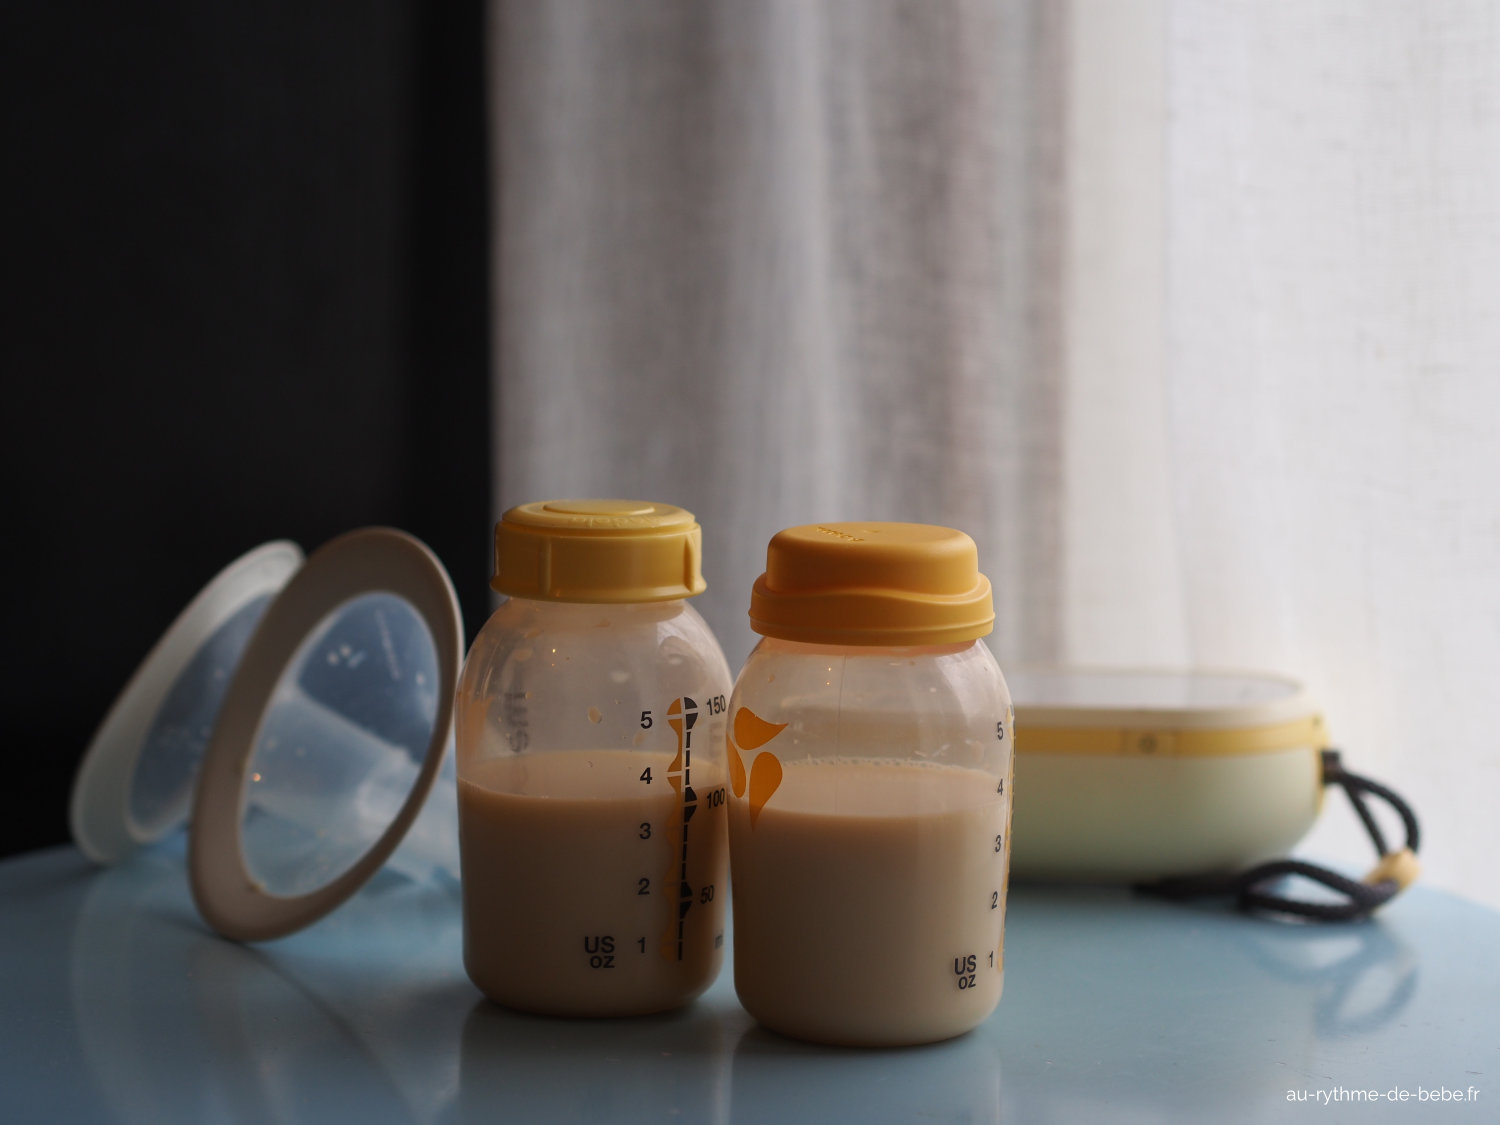 4 conseils pour tirer le lait maternel en déplacement